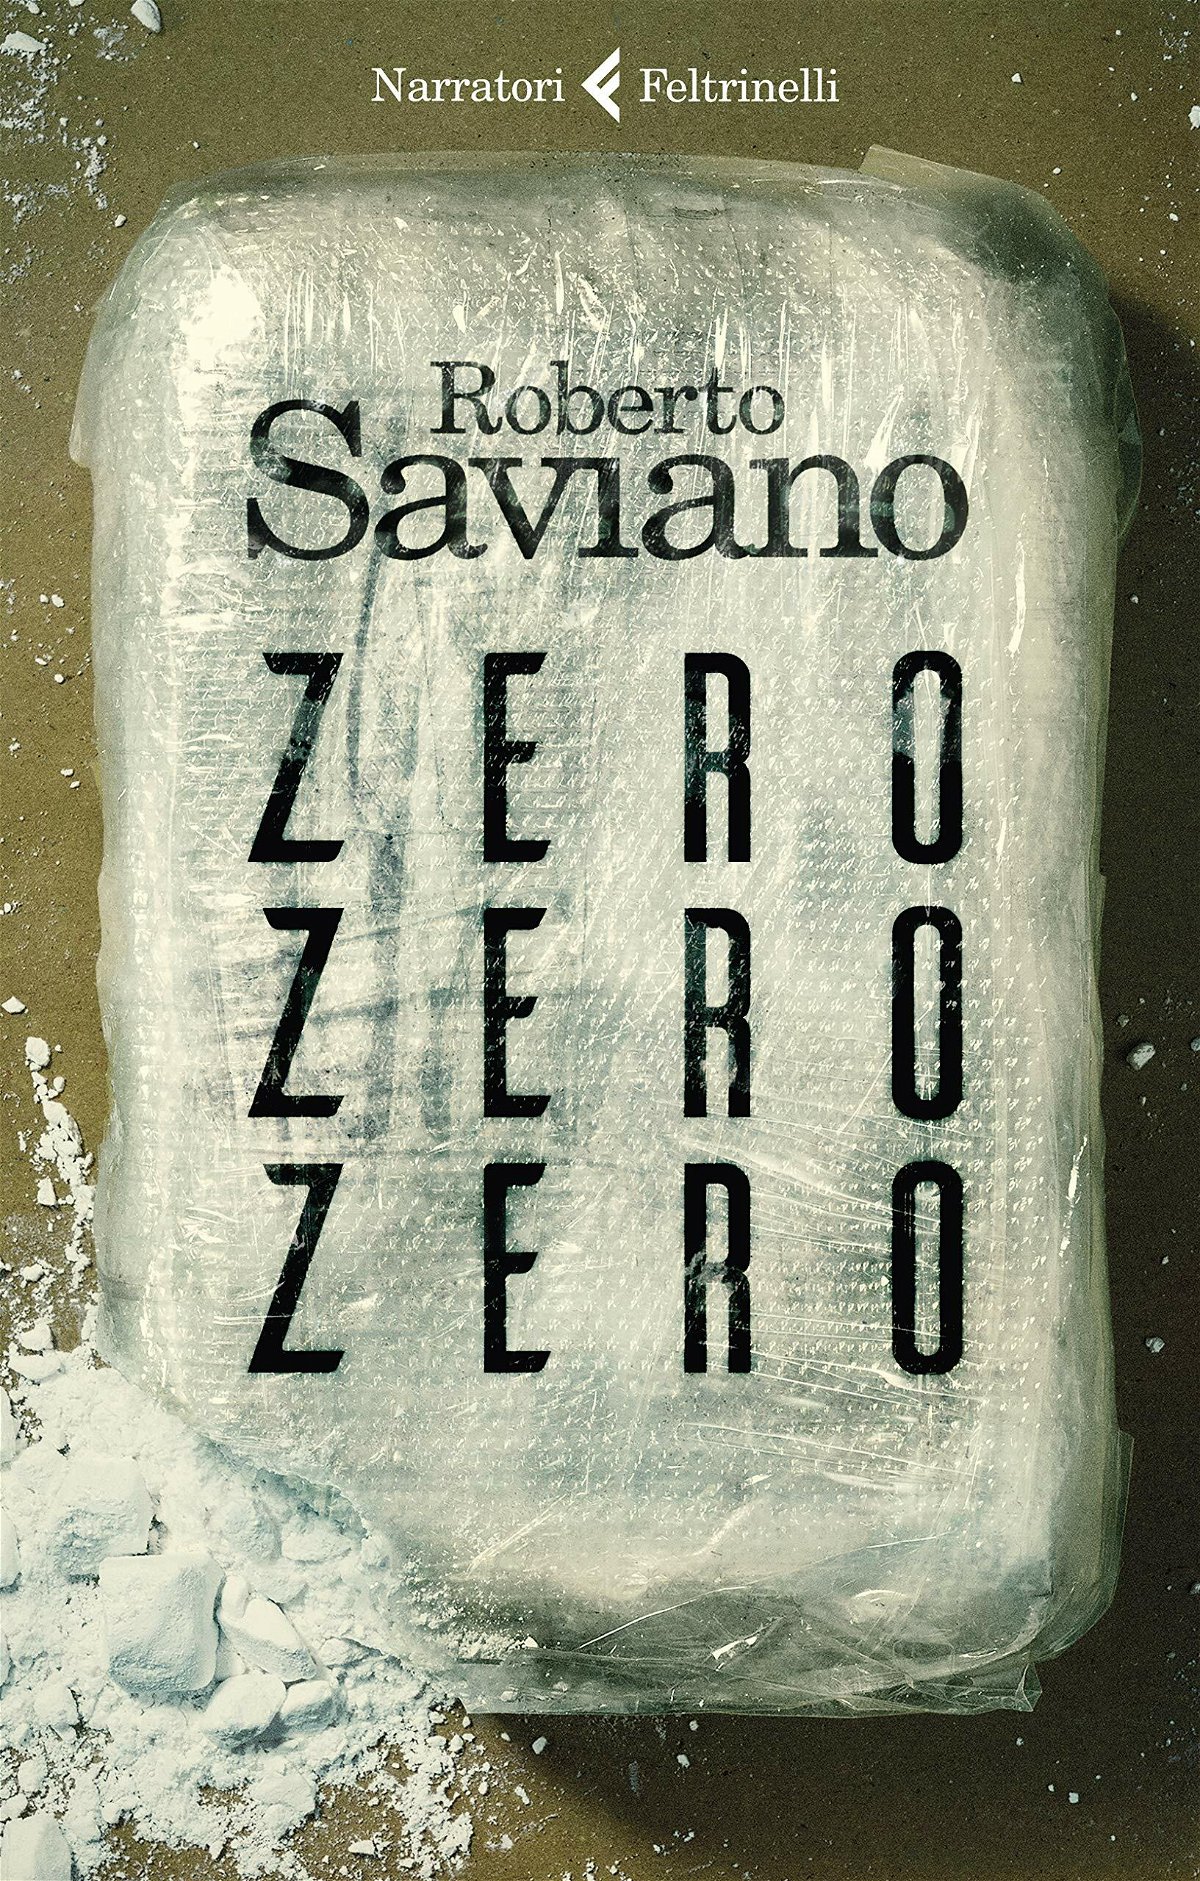 La copertina del romanzo di Saviano ZeroZeroZero